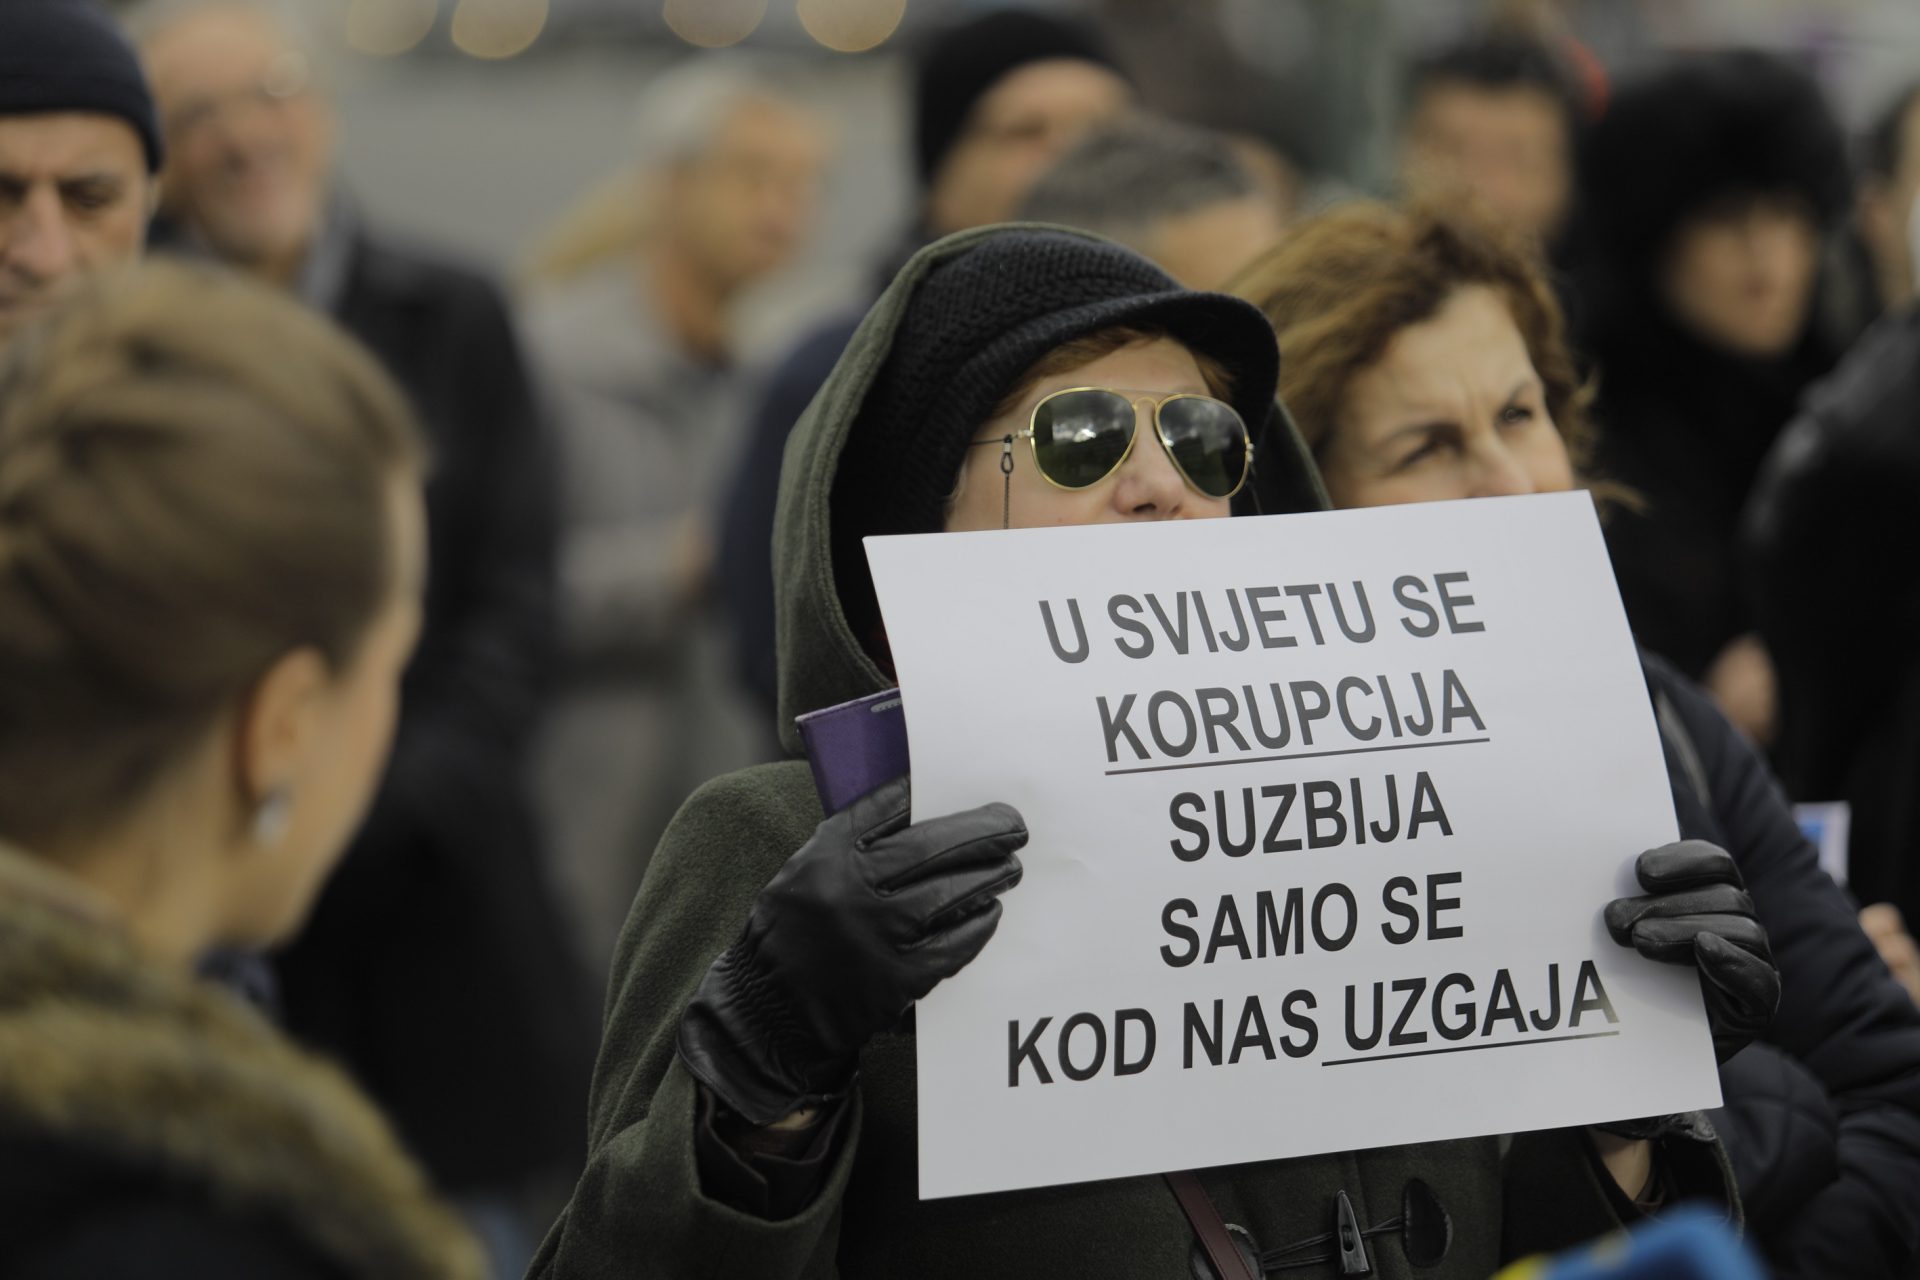 'LIDERI ŠTA IMA': Bosna i Hercegovina druga najlošije rangirana zemlja u Europi po stanju korupcije